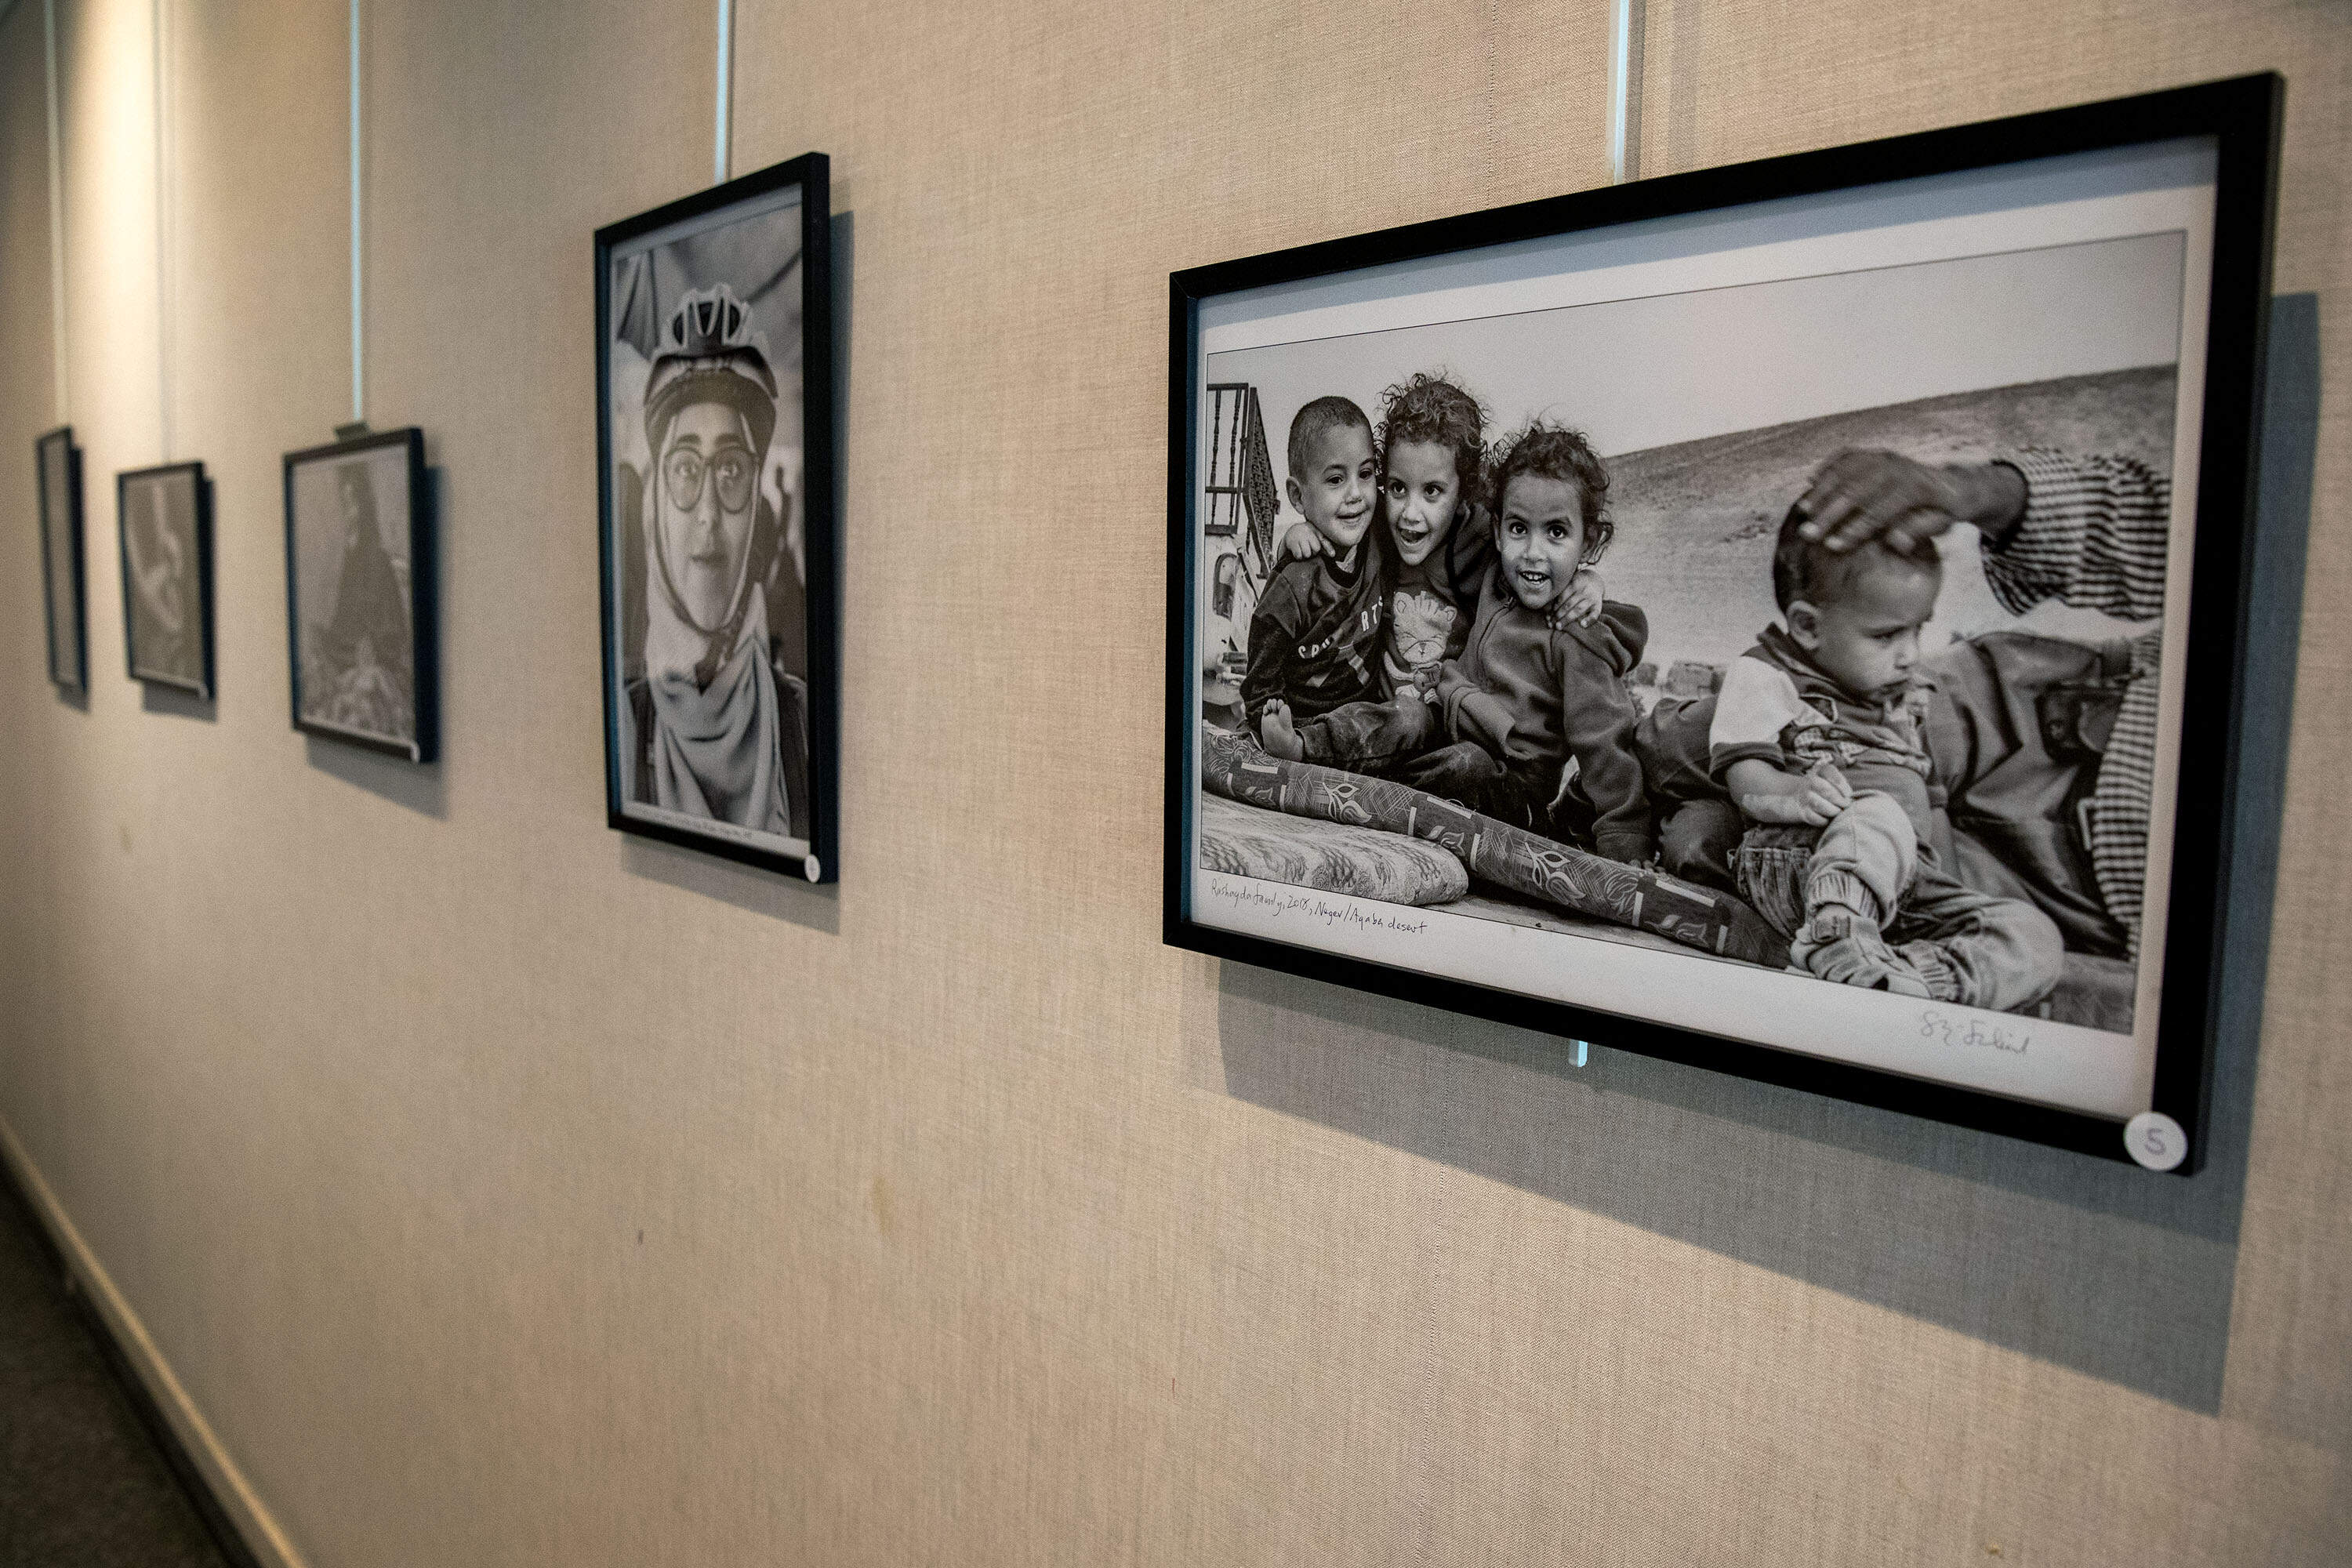 Une photographie intitulée « Famille Rashayda, 2018, désert du Néguev/Aqaba »  dans l'exposition du photographe Skip Shiel à la Newton Free Library.  (Robin Lubbock/WBUR)